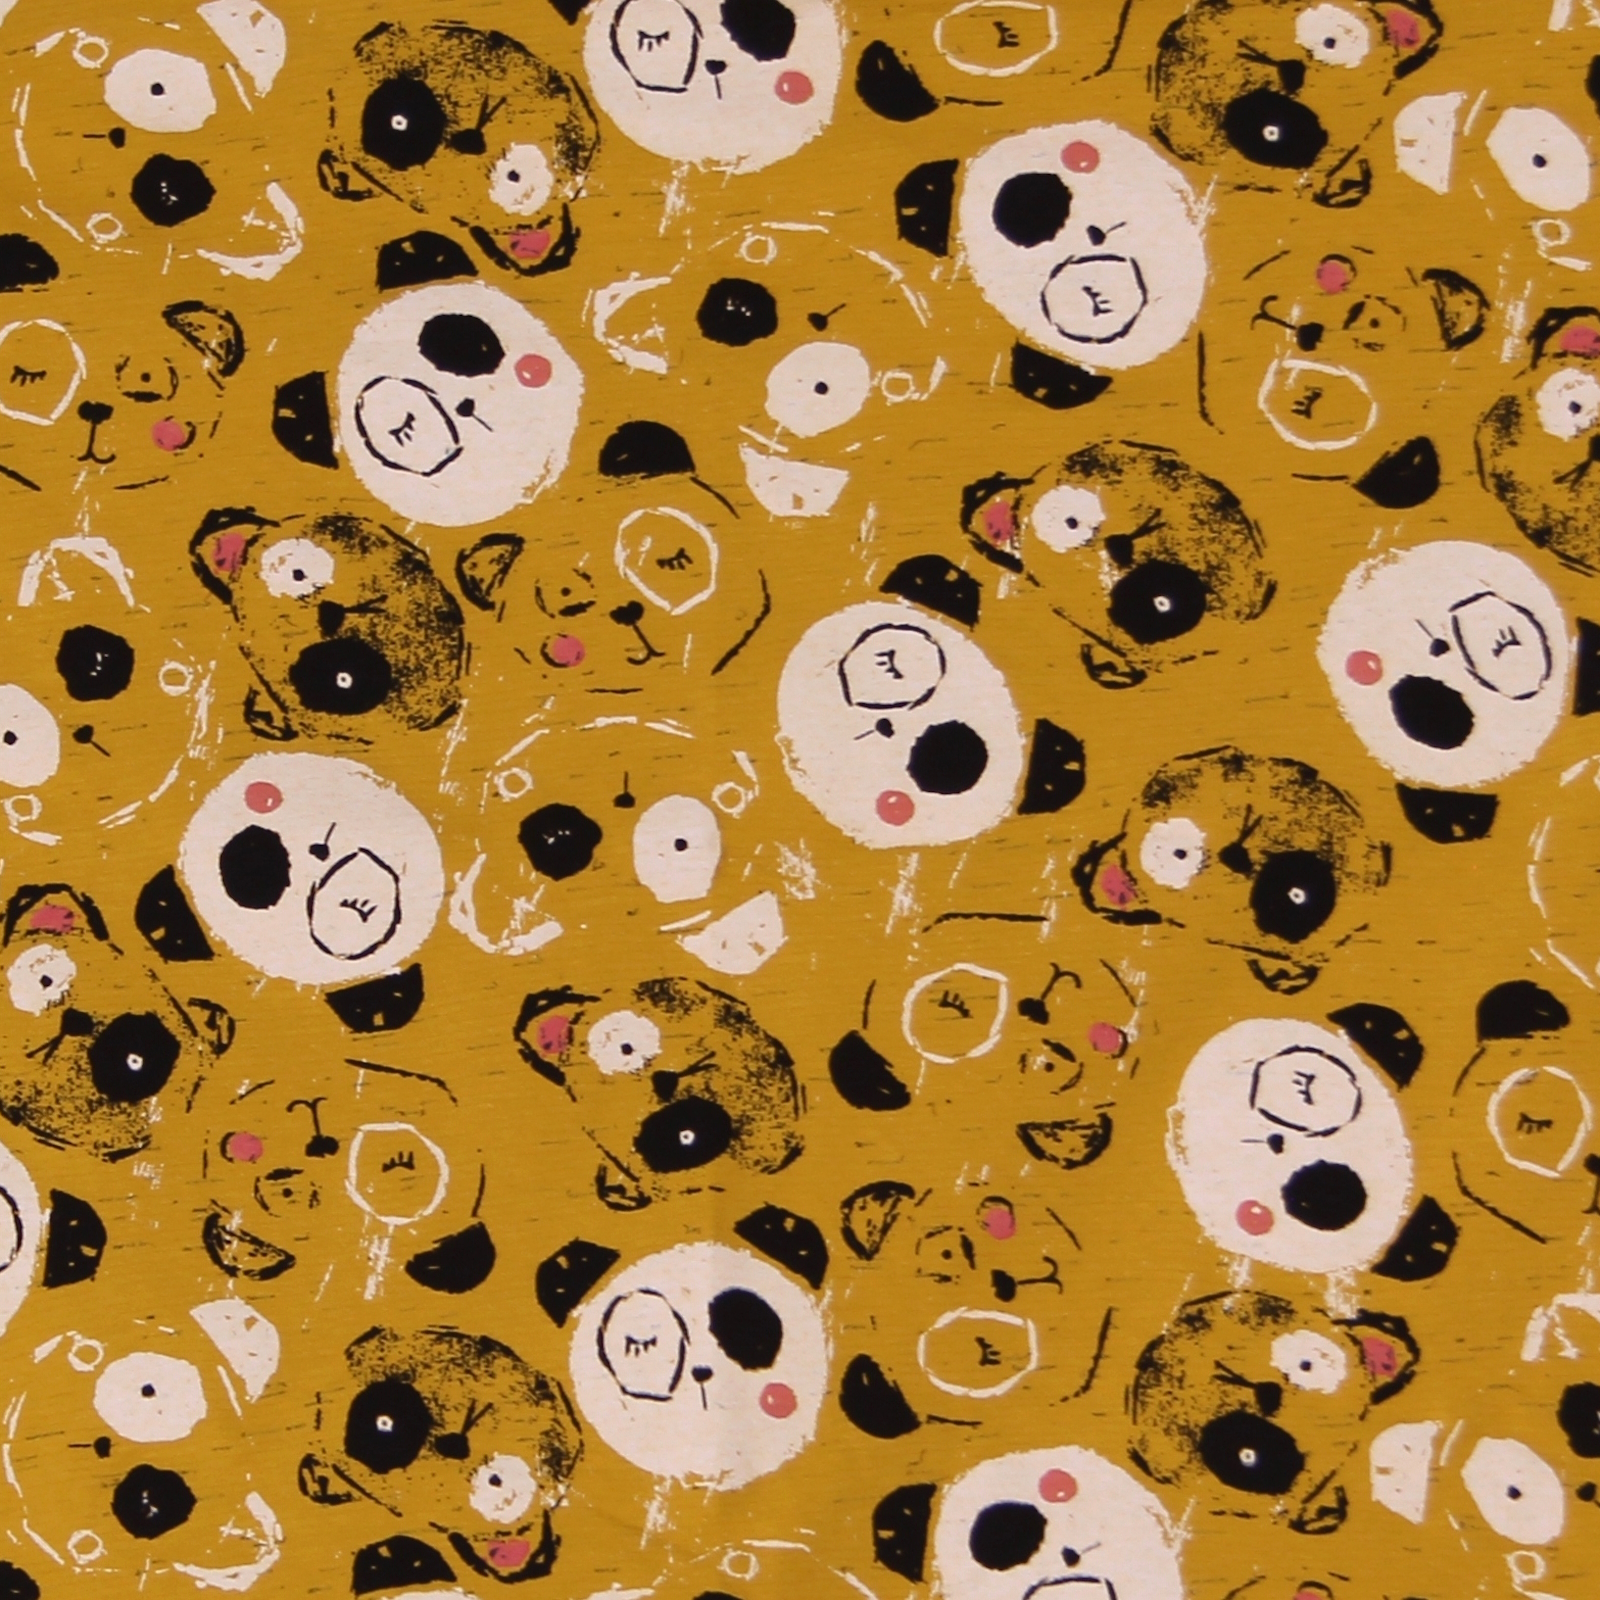 Kinderbettwäsche 100x135 40x60 cm Panda Bären Ocker Jersey